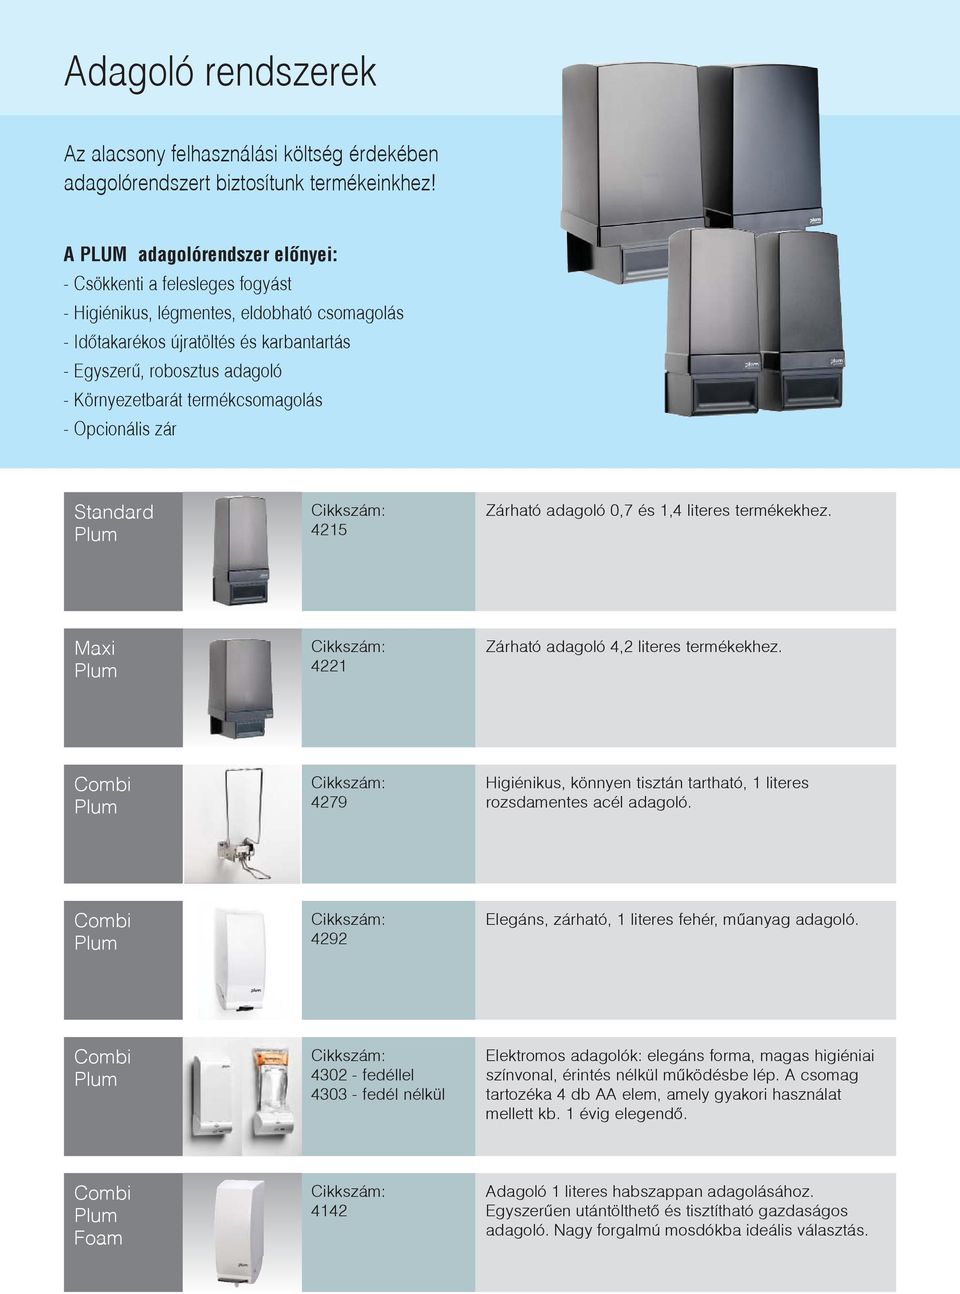 termékcsomagolás - Opcionális zár Standard 4215 Zárható adagoló 0,7 és 1,4 literes termékekhez. Maxi 4221 Zárható adagoló 4,2 literes termékekhez.